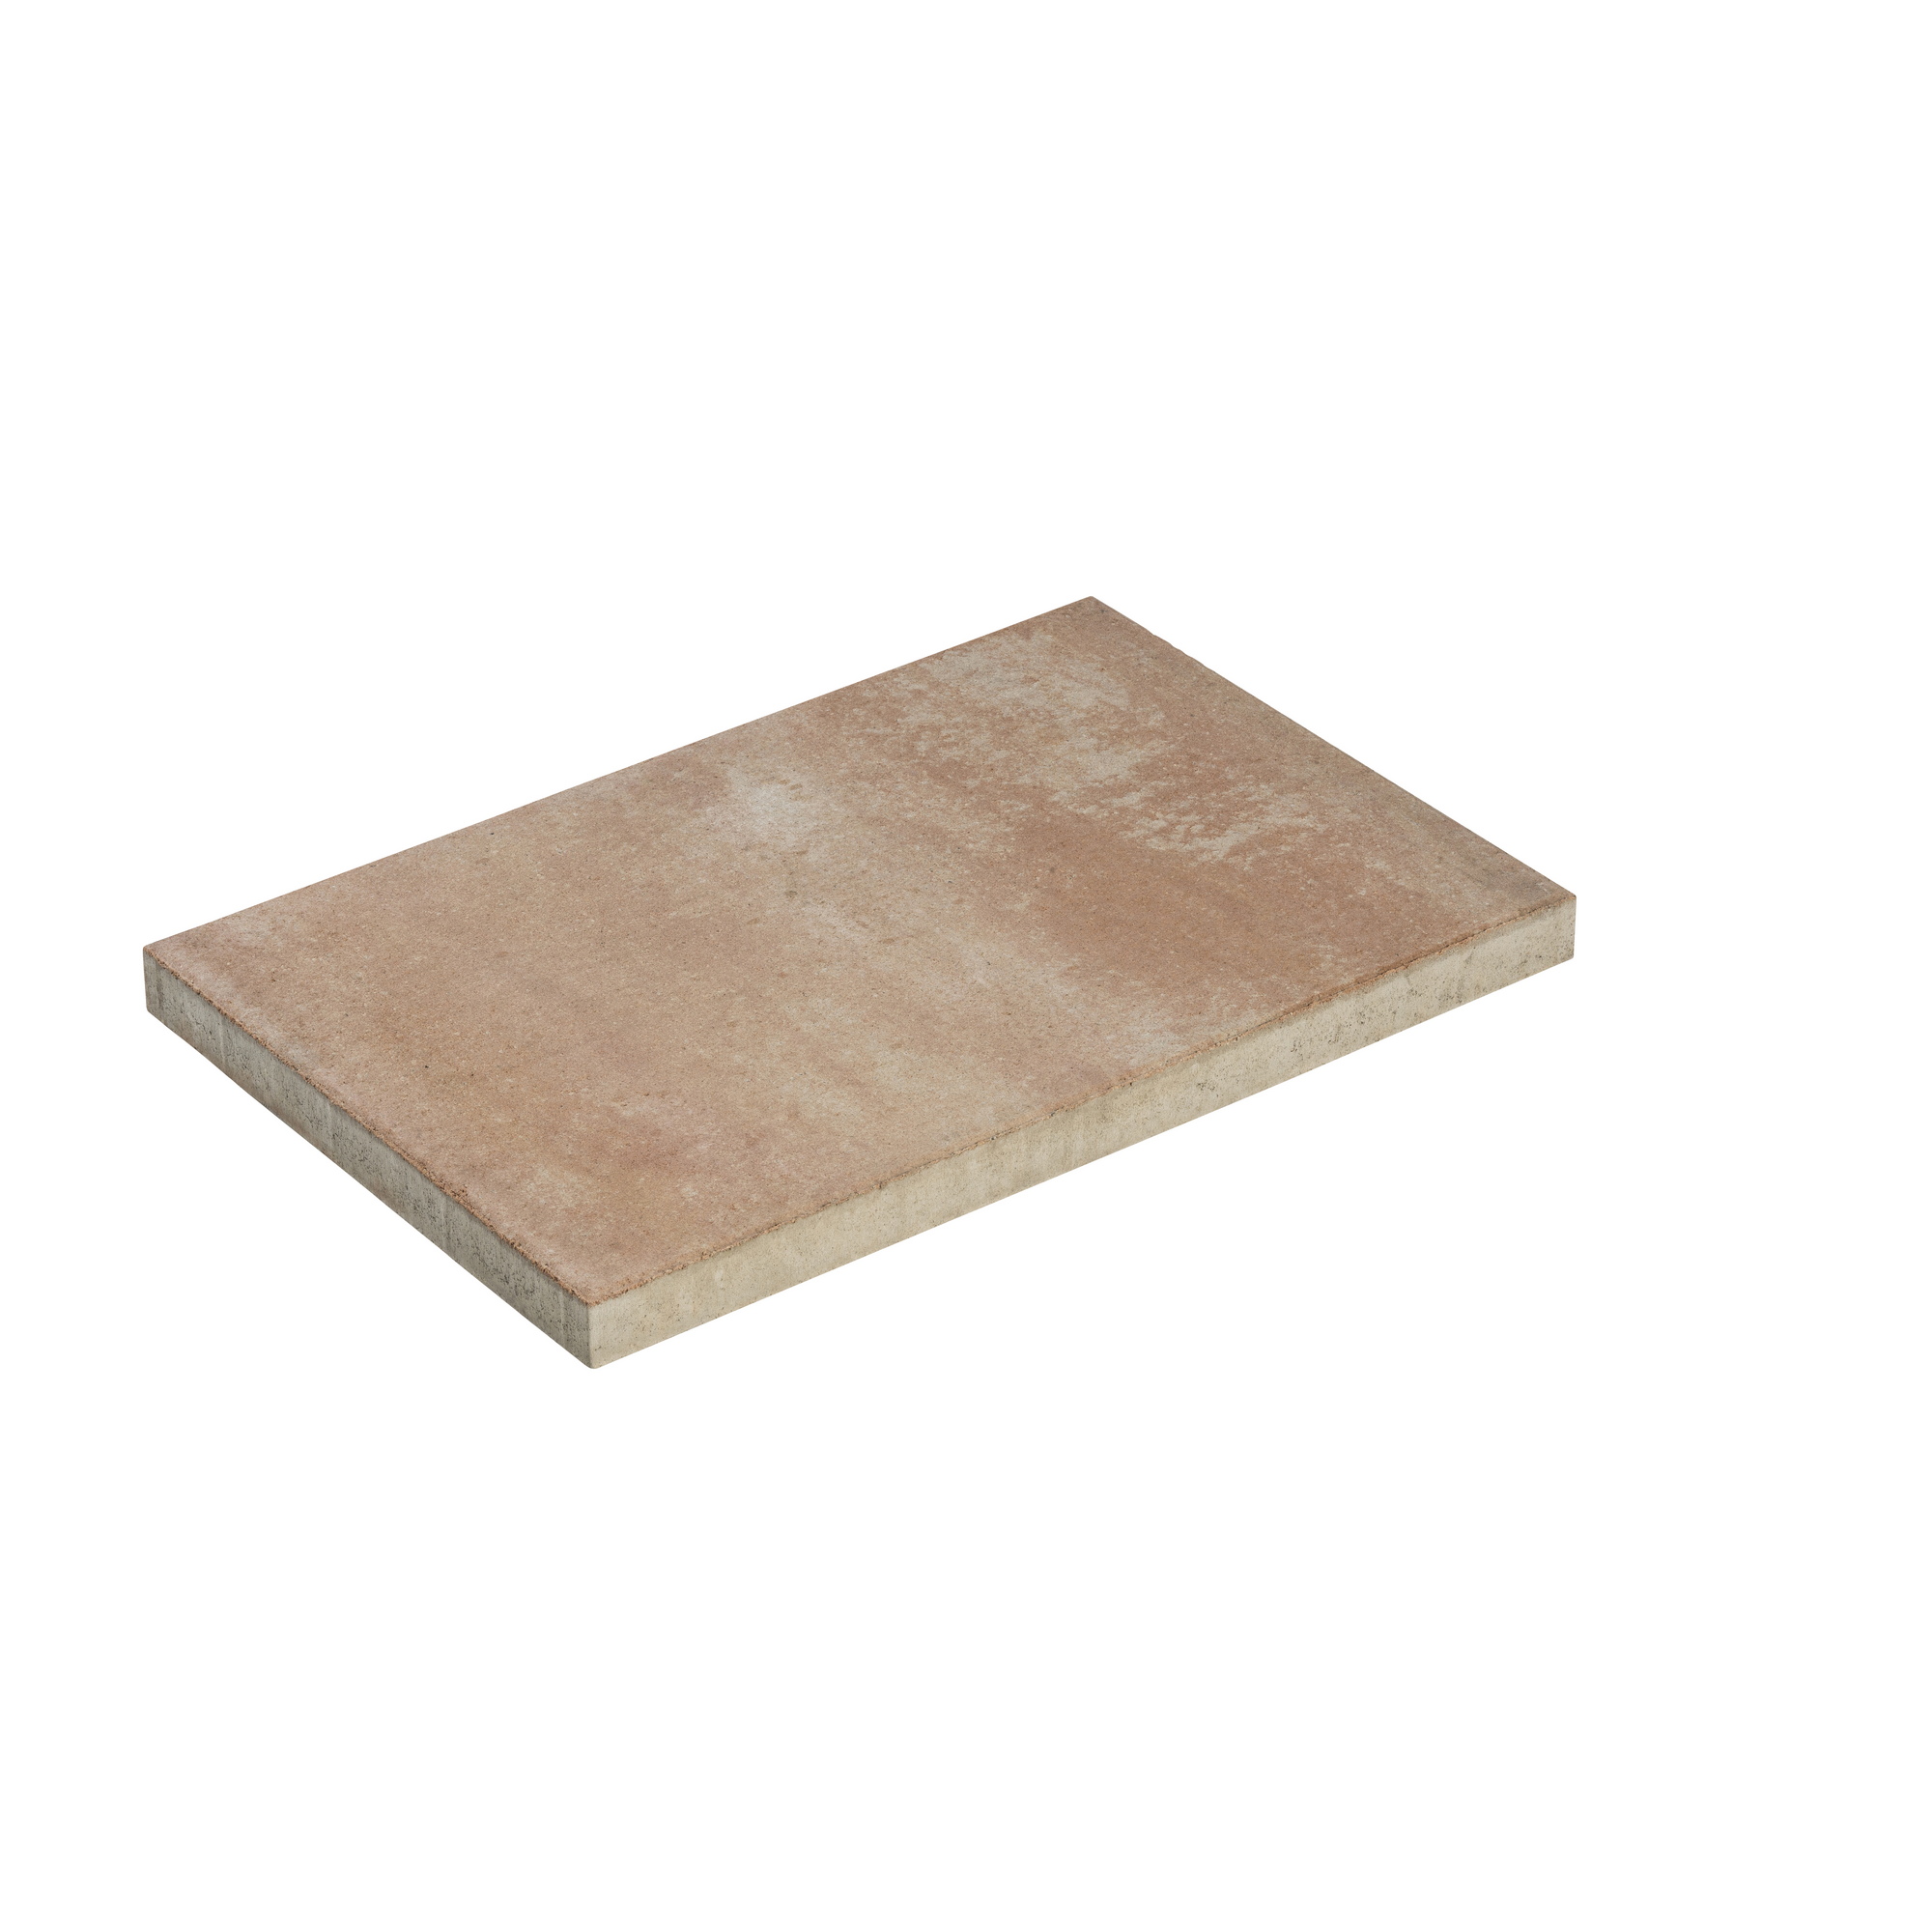 Diephaus Terrassenplatte 'T-Court Solid' Beton sandstein 60 x 40 x 4 cm